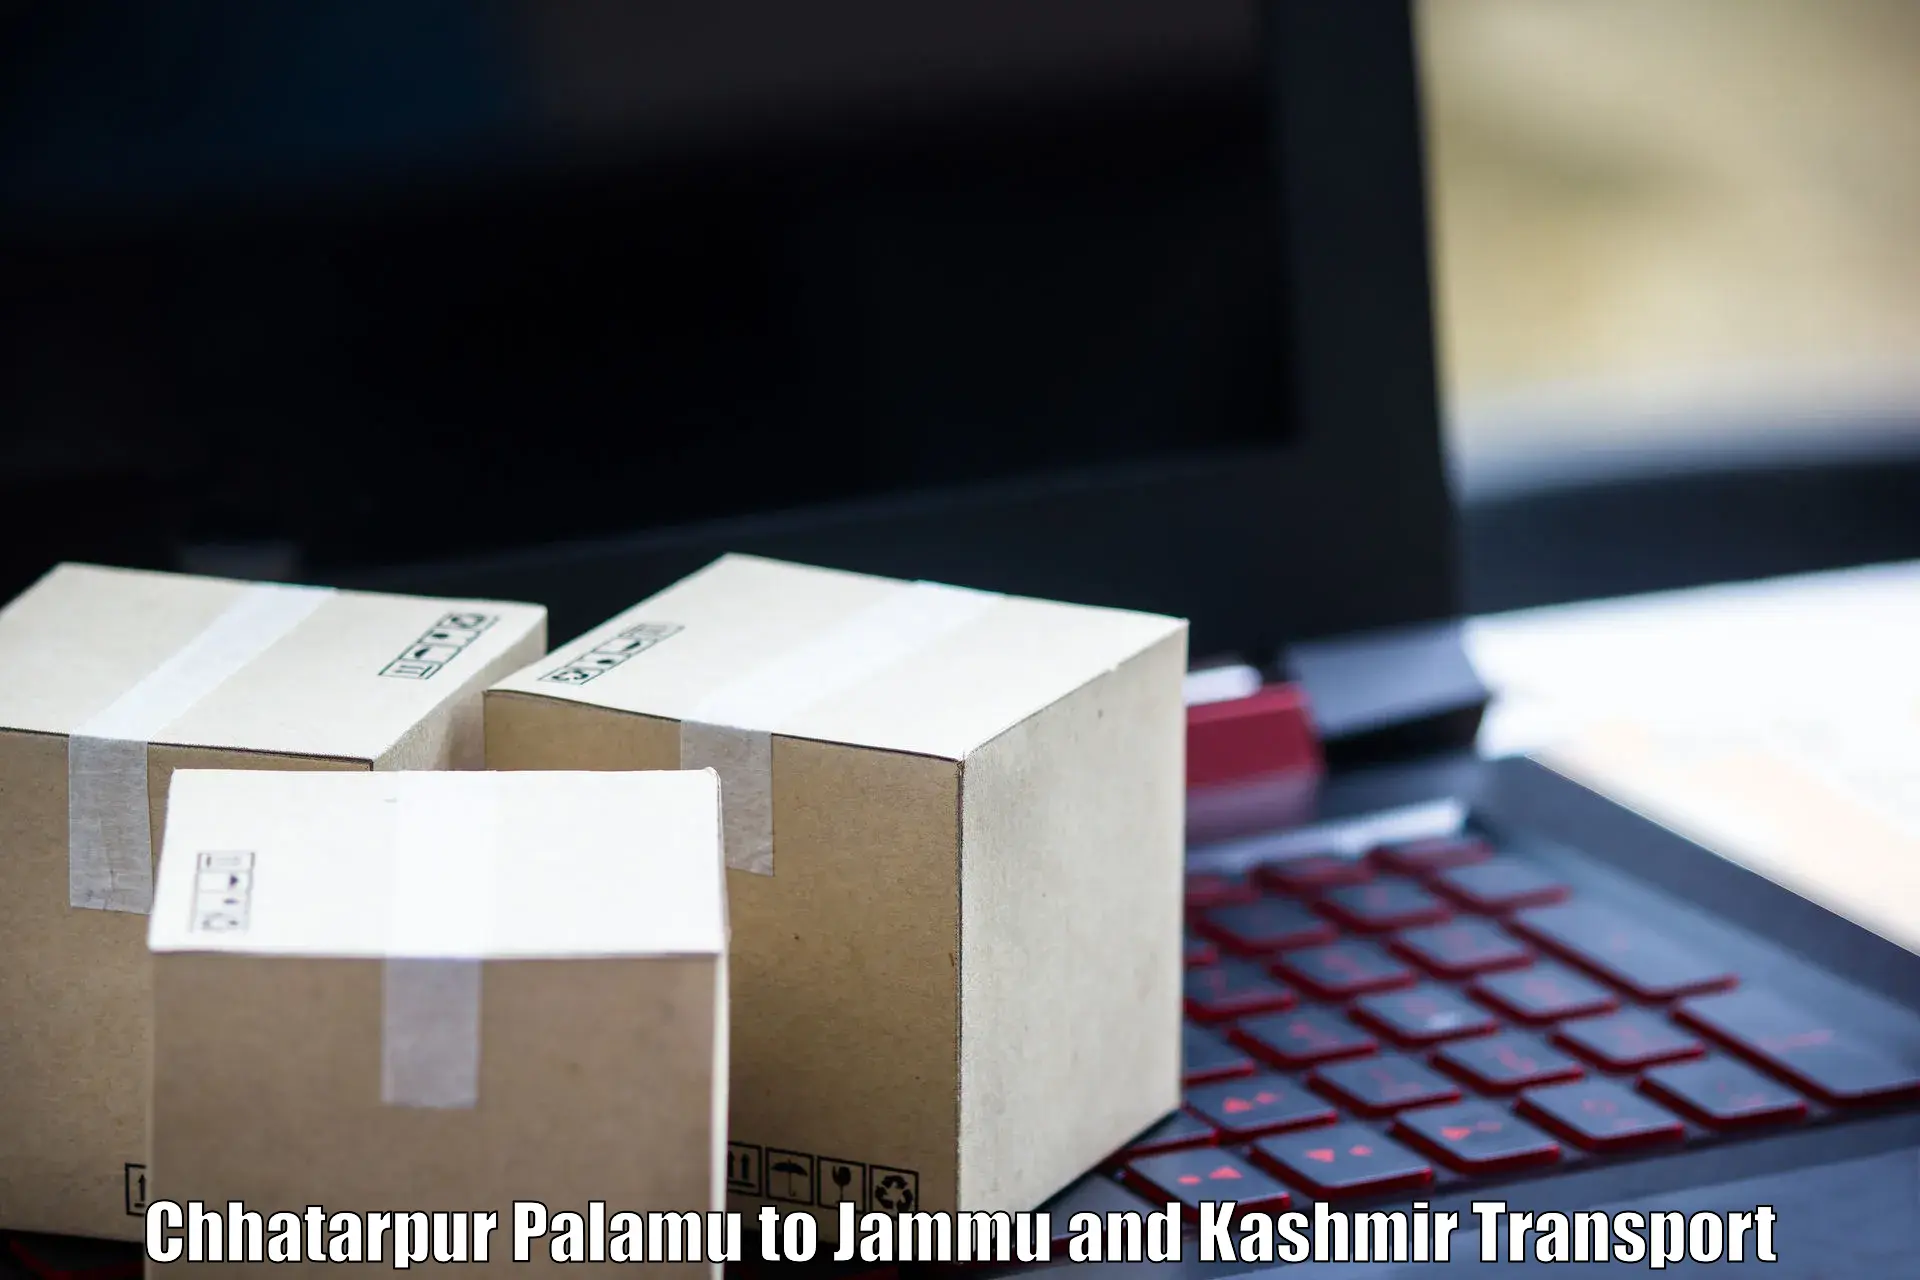 Commercial transport service Chhatarpur Palamu to Srinagar Kashmir